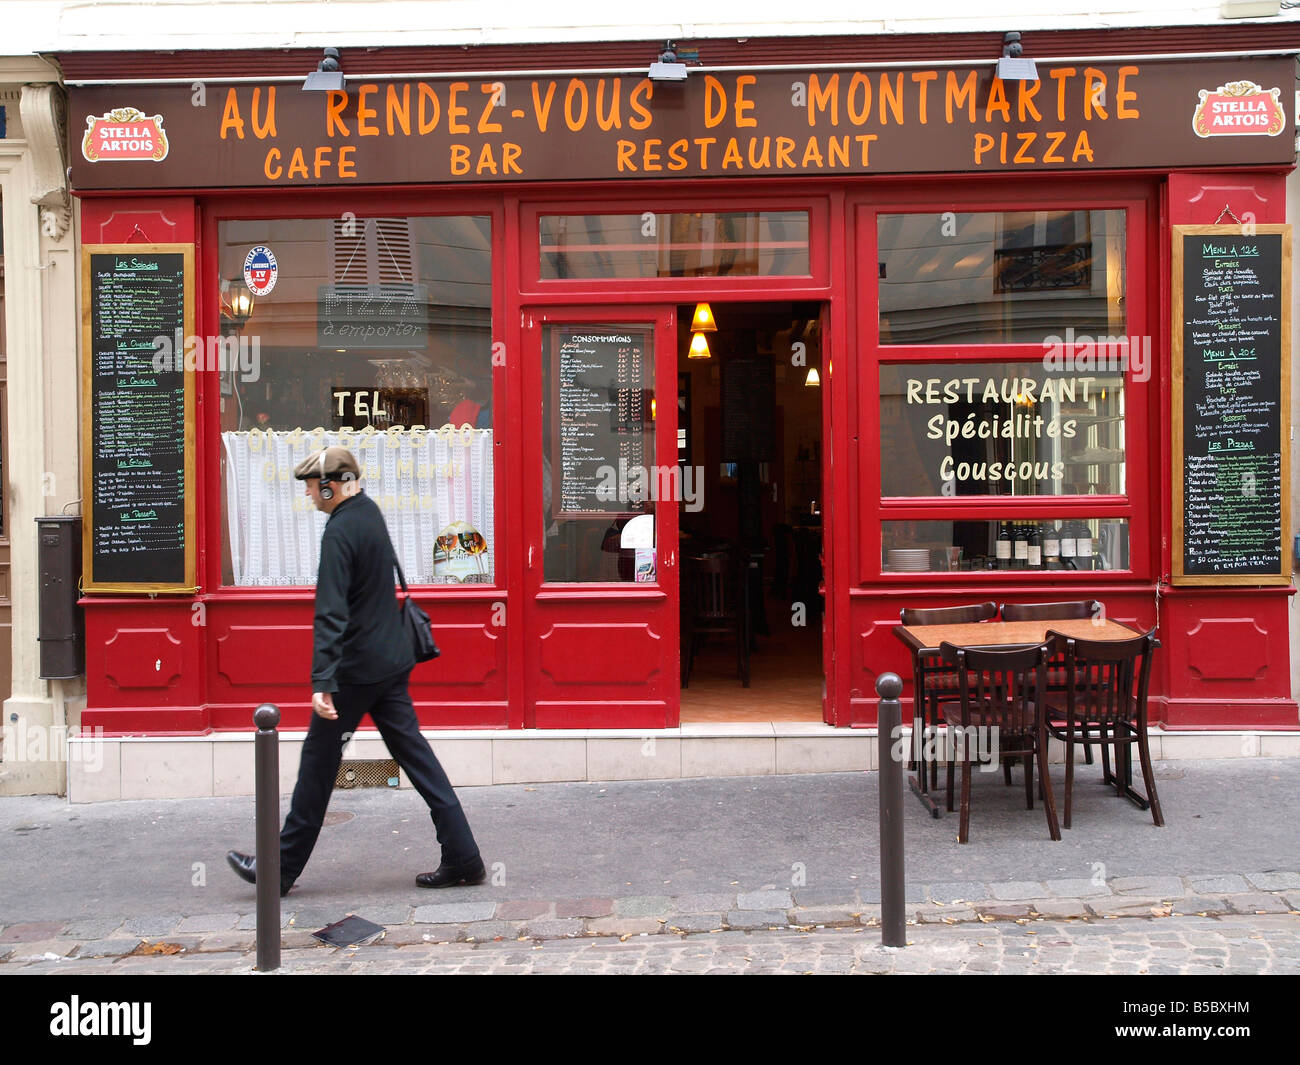 Au Rendez-Vous de Montmartre ein traditionelles Restaurant-Café, 15 rue La Vieuville Paris Stockfoto